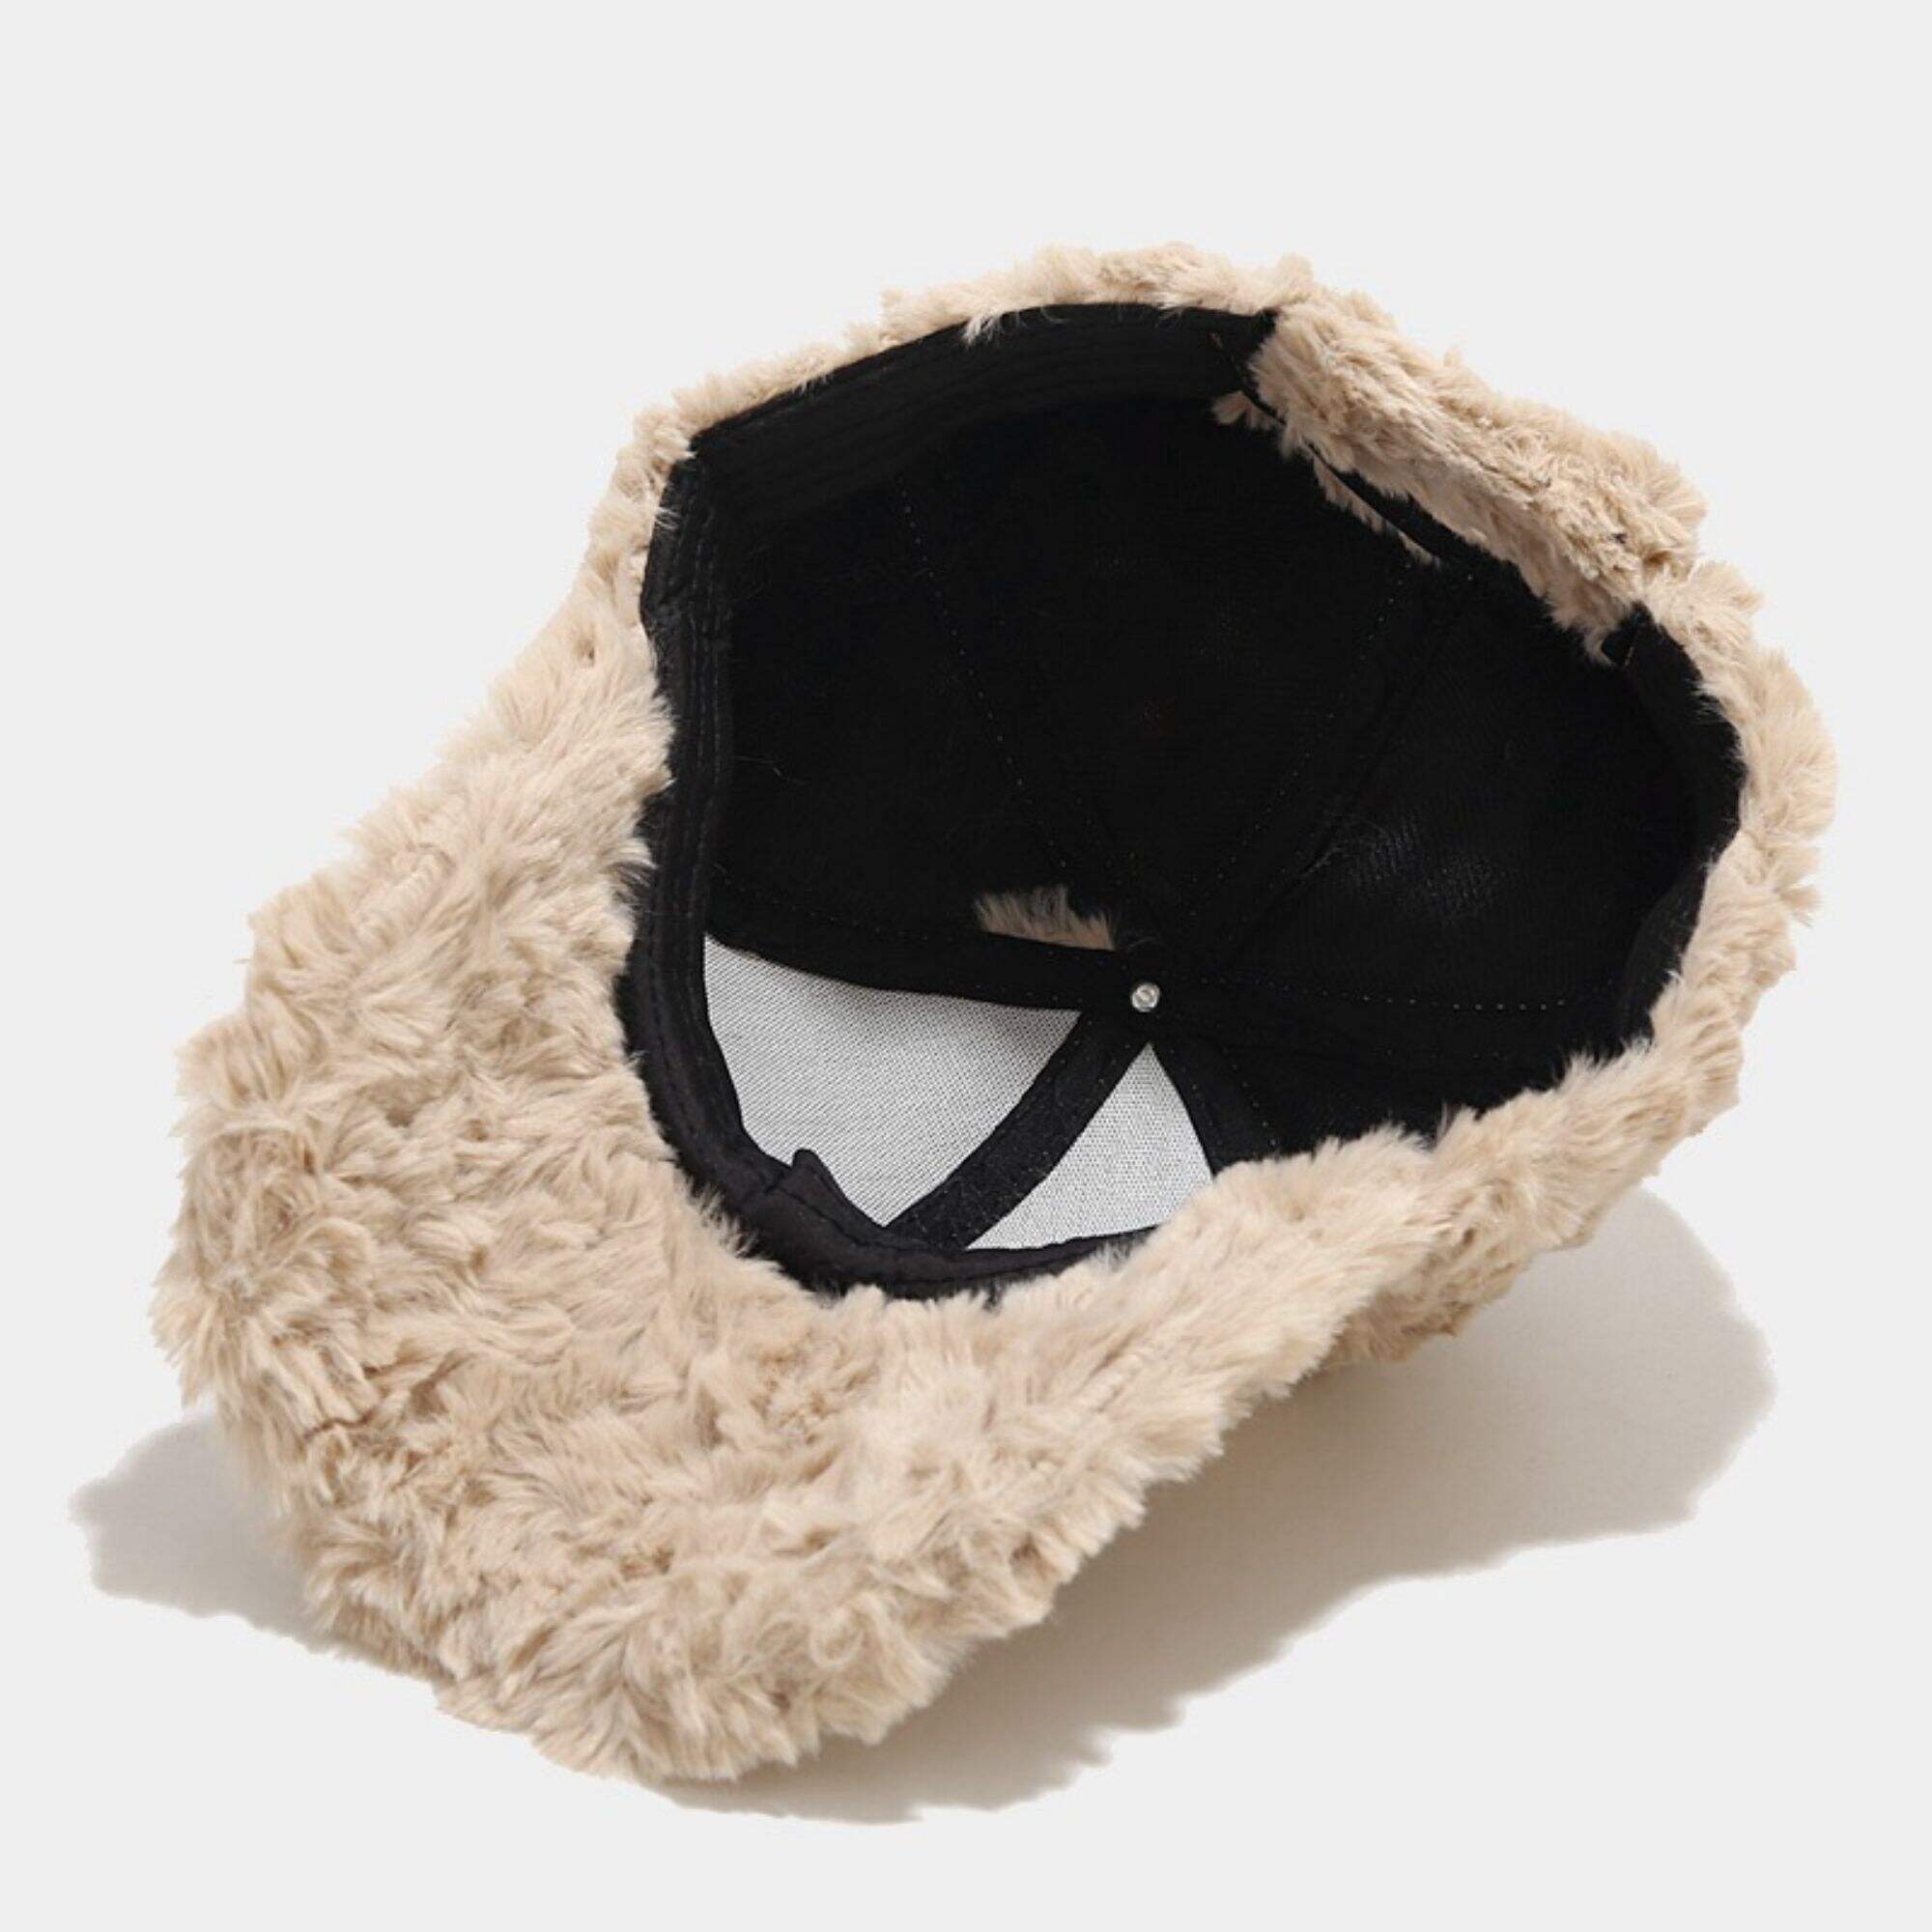 Custom plush baseball cap